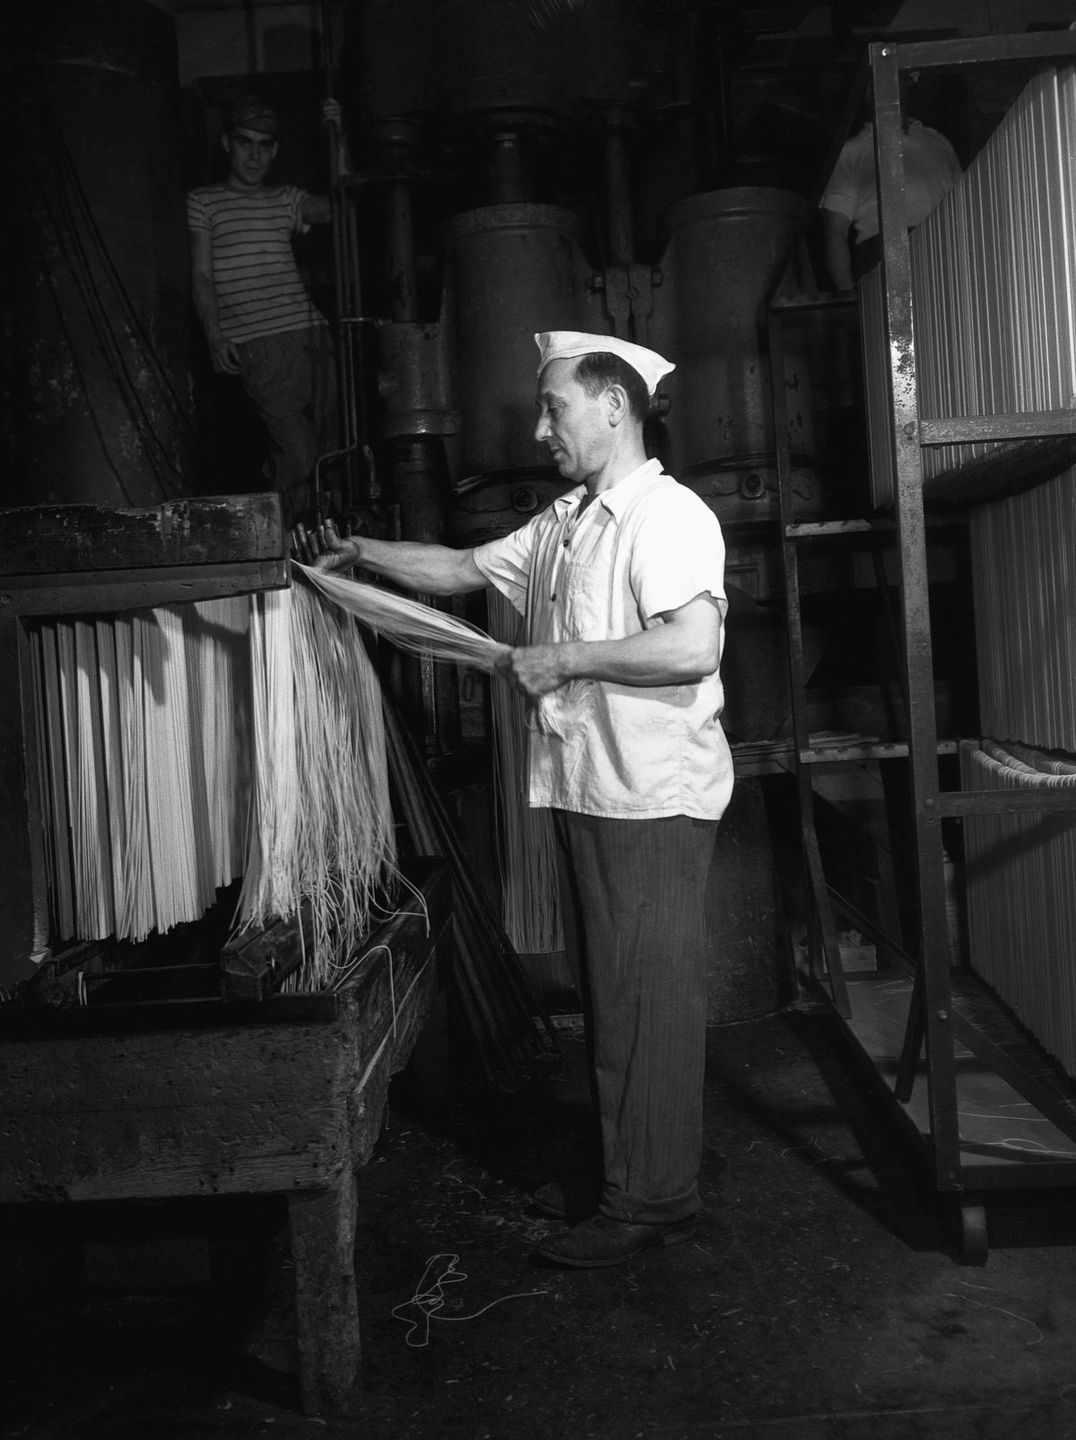 Производство пасты в начале XX века